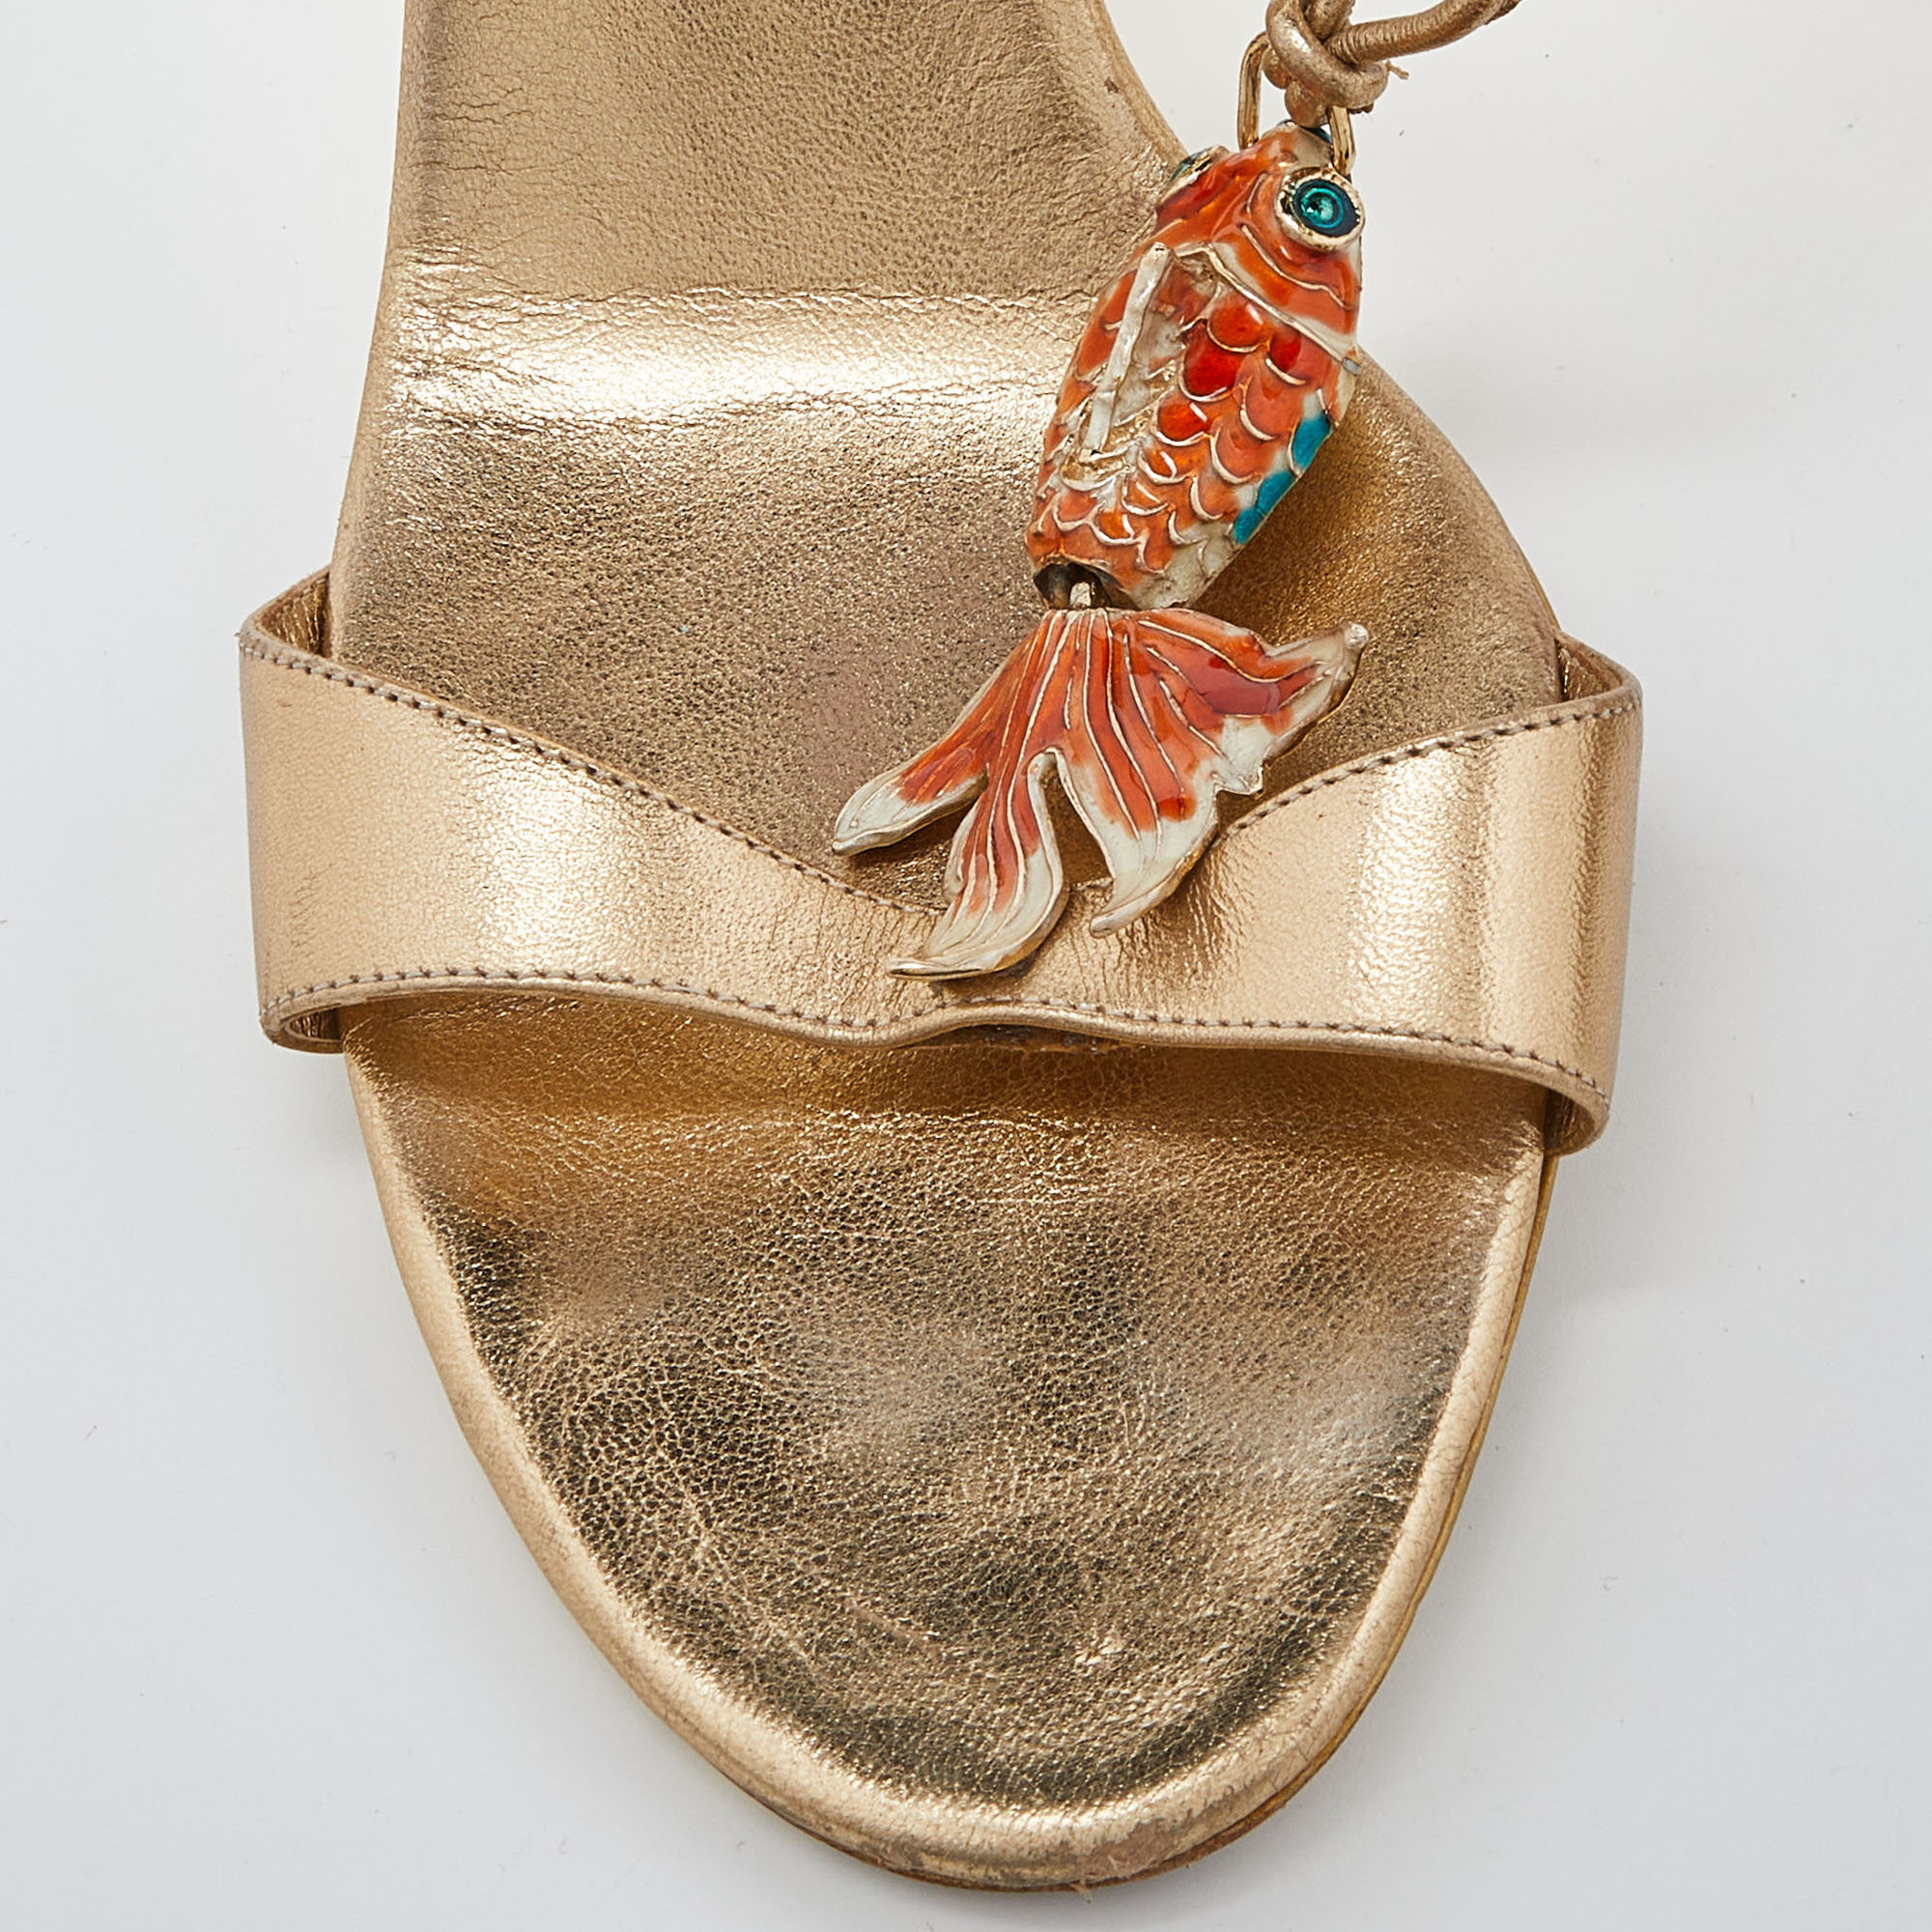 Celine Metallic Gold Leather Koi Fish Embellished Slide Sandals Size 39